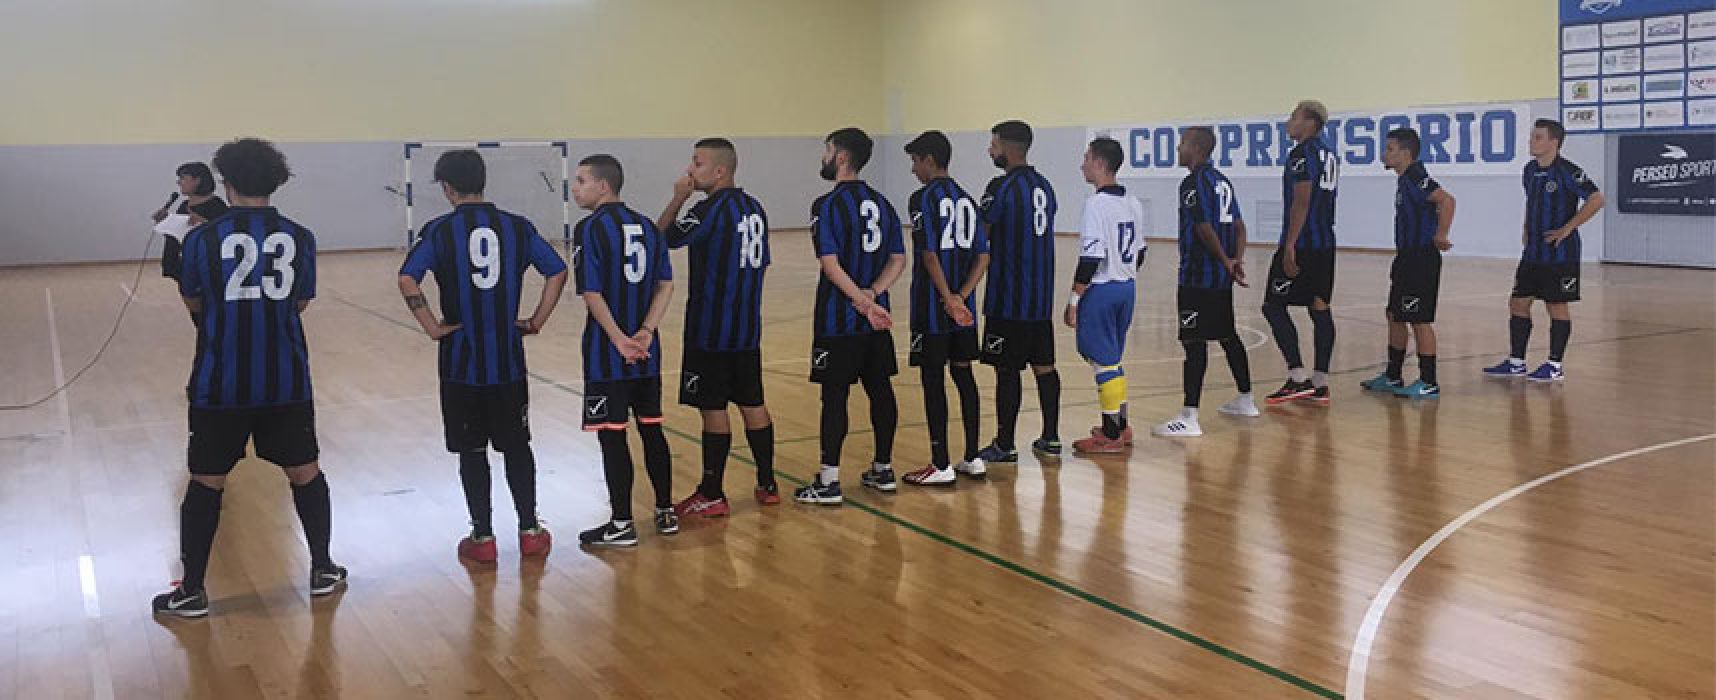 Divisione Calcio a 5 ufficializza classifiche definitive, Futsal Bisceglie retrocede in Serie B